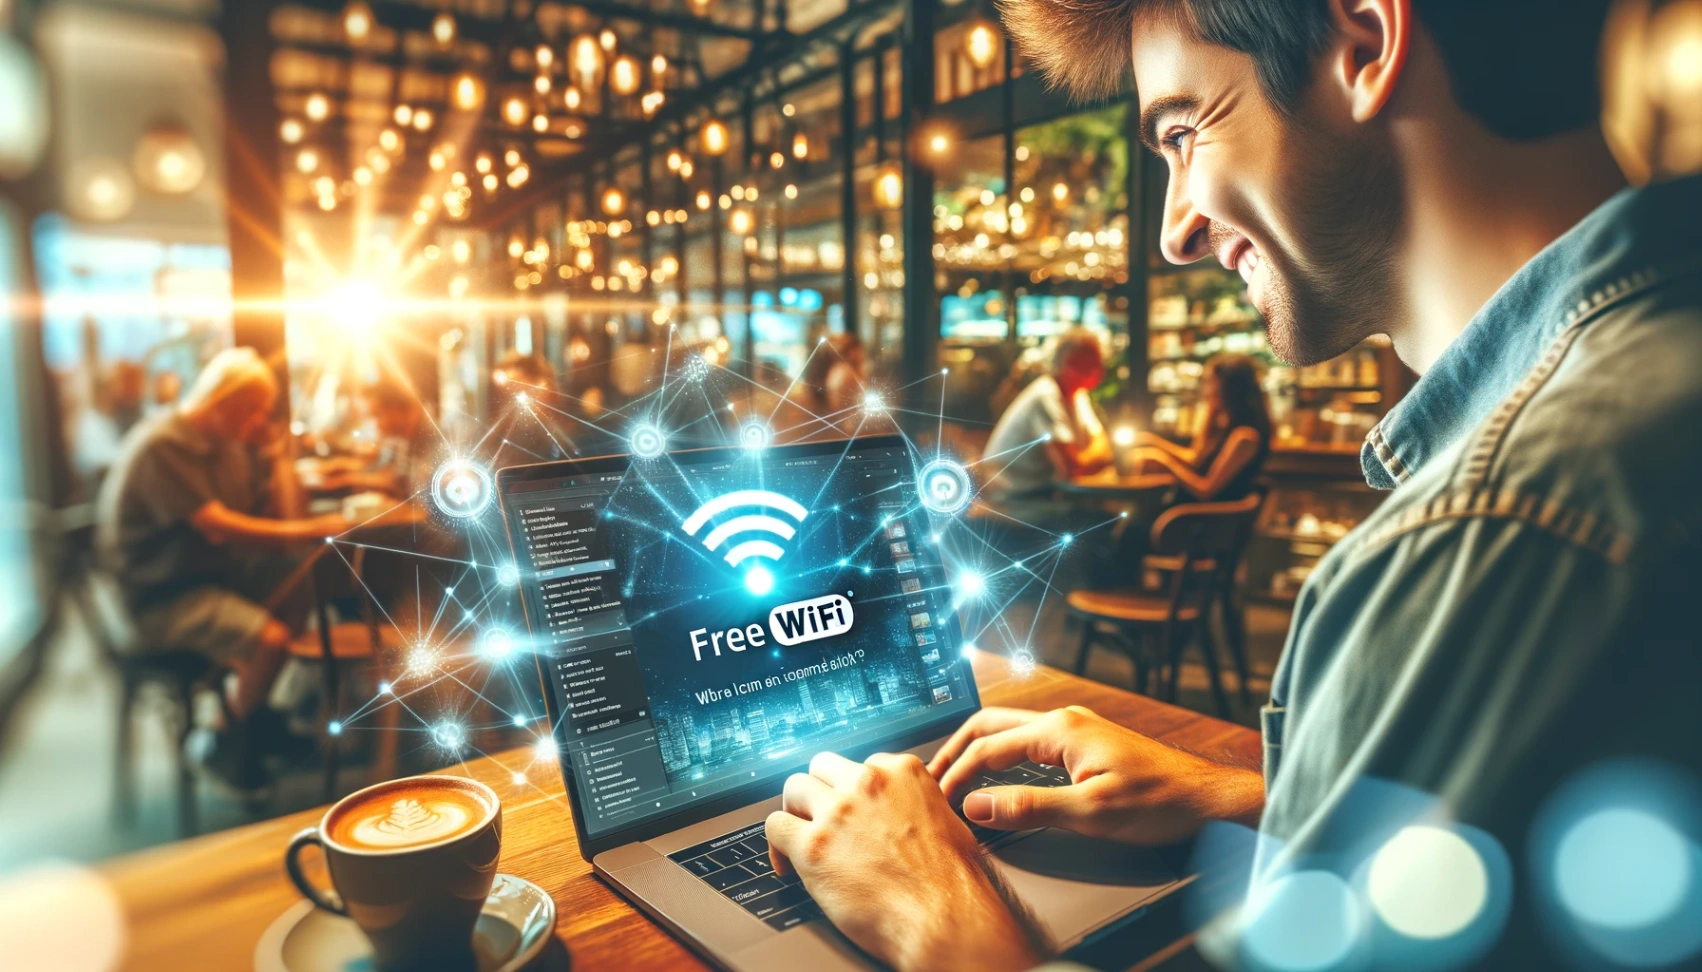 Узнайте пошагово, как найти бесплатный Wi-Fi совершенно бесплатно